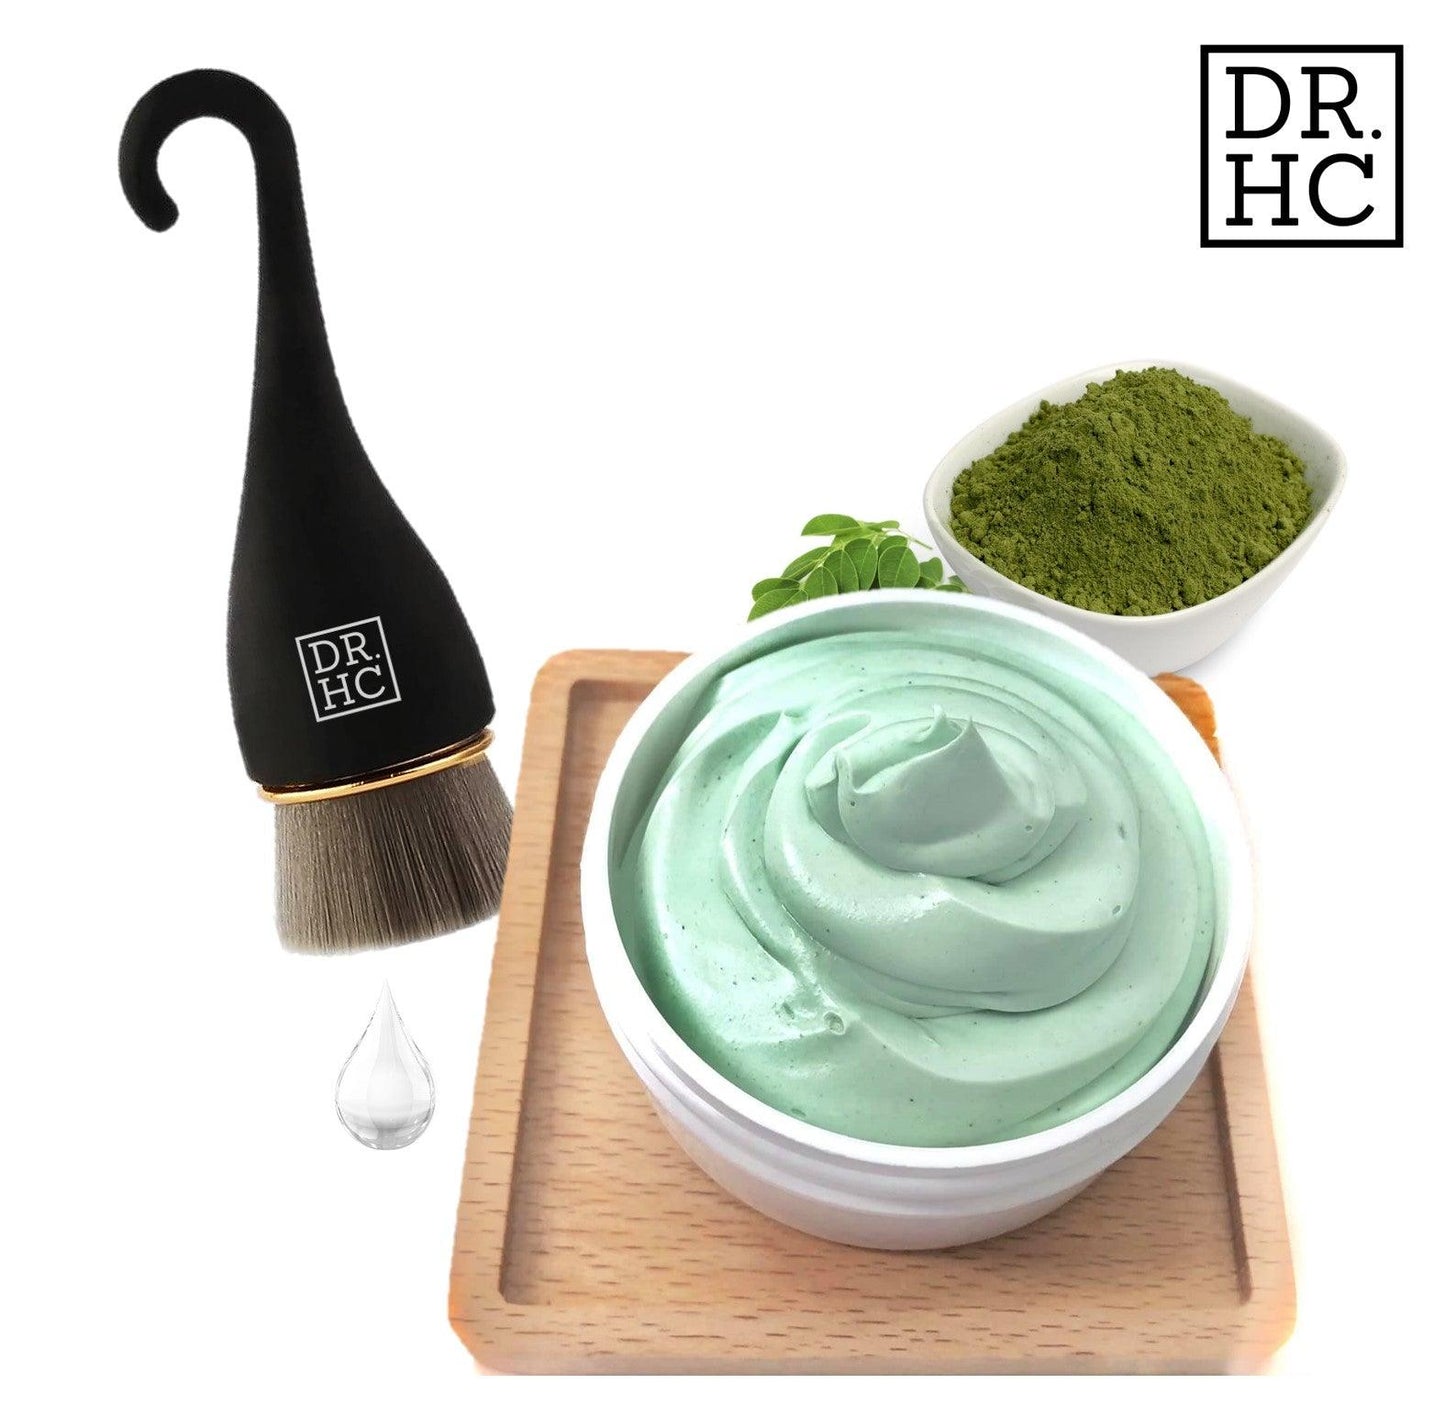 DR.HC Kale & Matcha - Face Cleansing Gelato (60g, 2oz) (Skin brightening, Anti-aging, Anti-inflammatory, Anti-acne...)-2